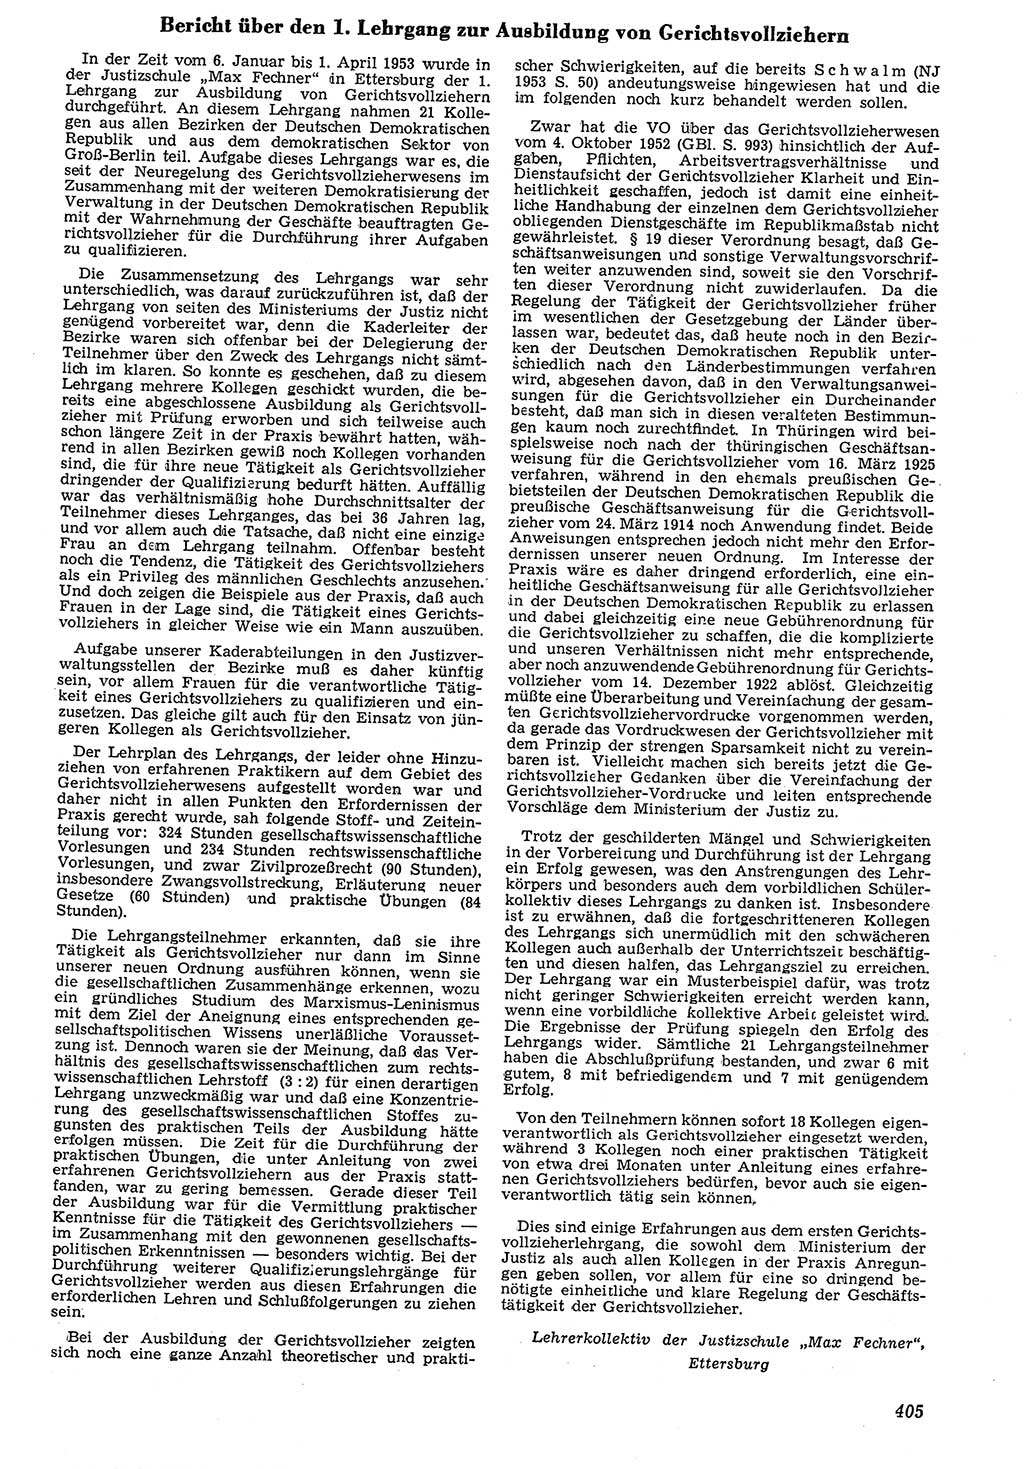 Neue Justiz (NJ), Zeitschrift für Recht und Rechtswissenschaft [Deutsche Demokratische Republik (DDR)], 7. Jahrgang 1953, Seite 405 (NJ DDR 1953, S. 405)